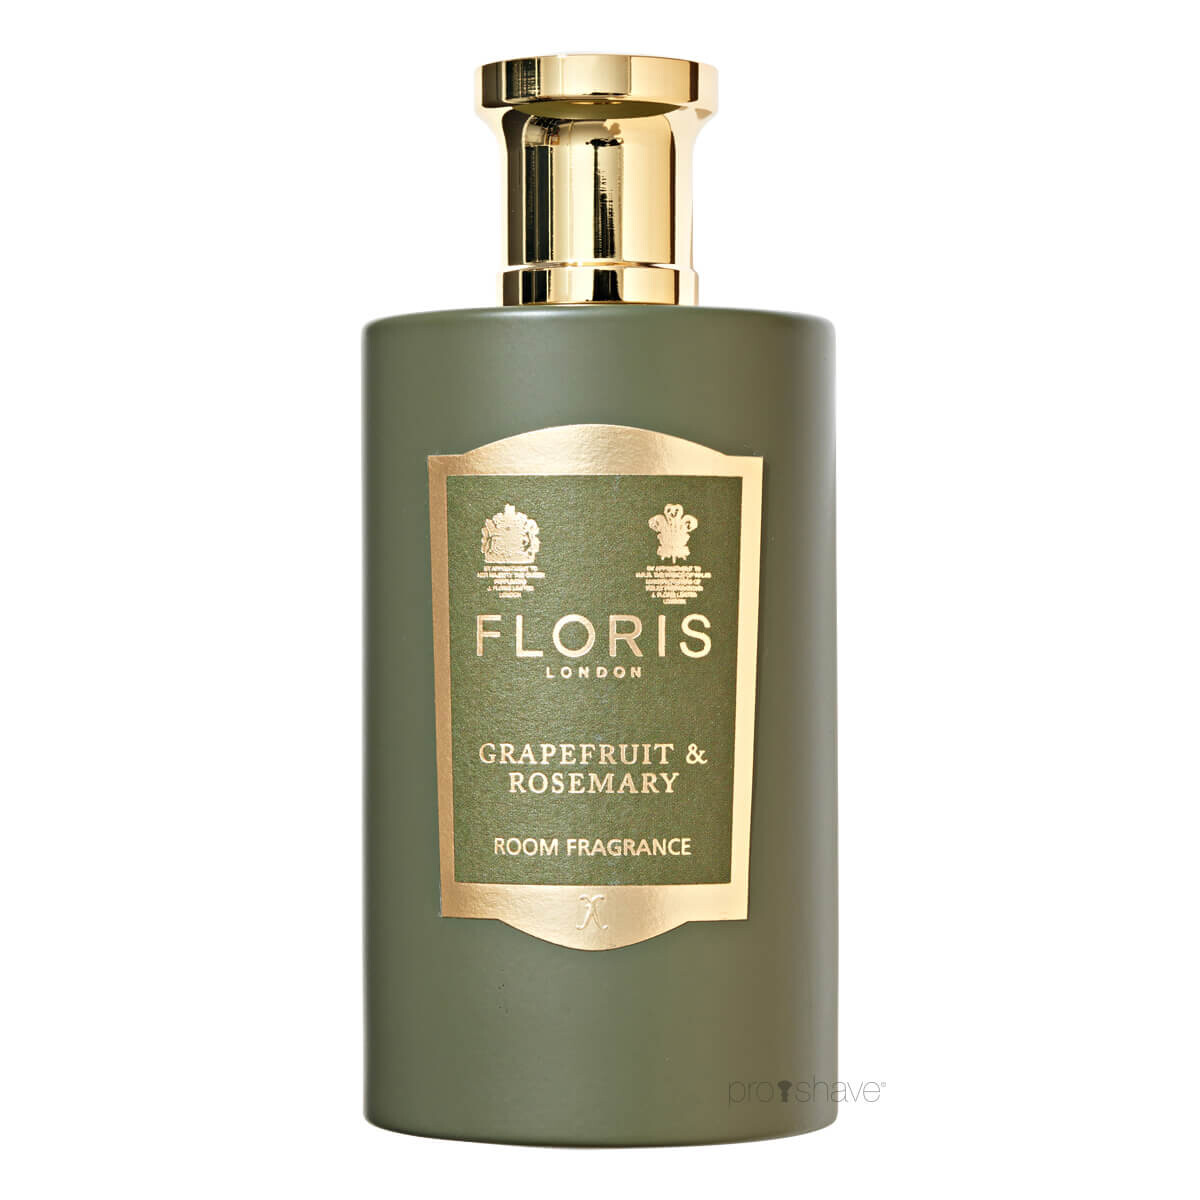 Billede af Floris Grapefrugt & Rosmarin Room Fragrance, 100 ml.